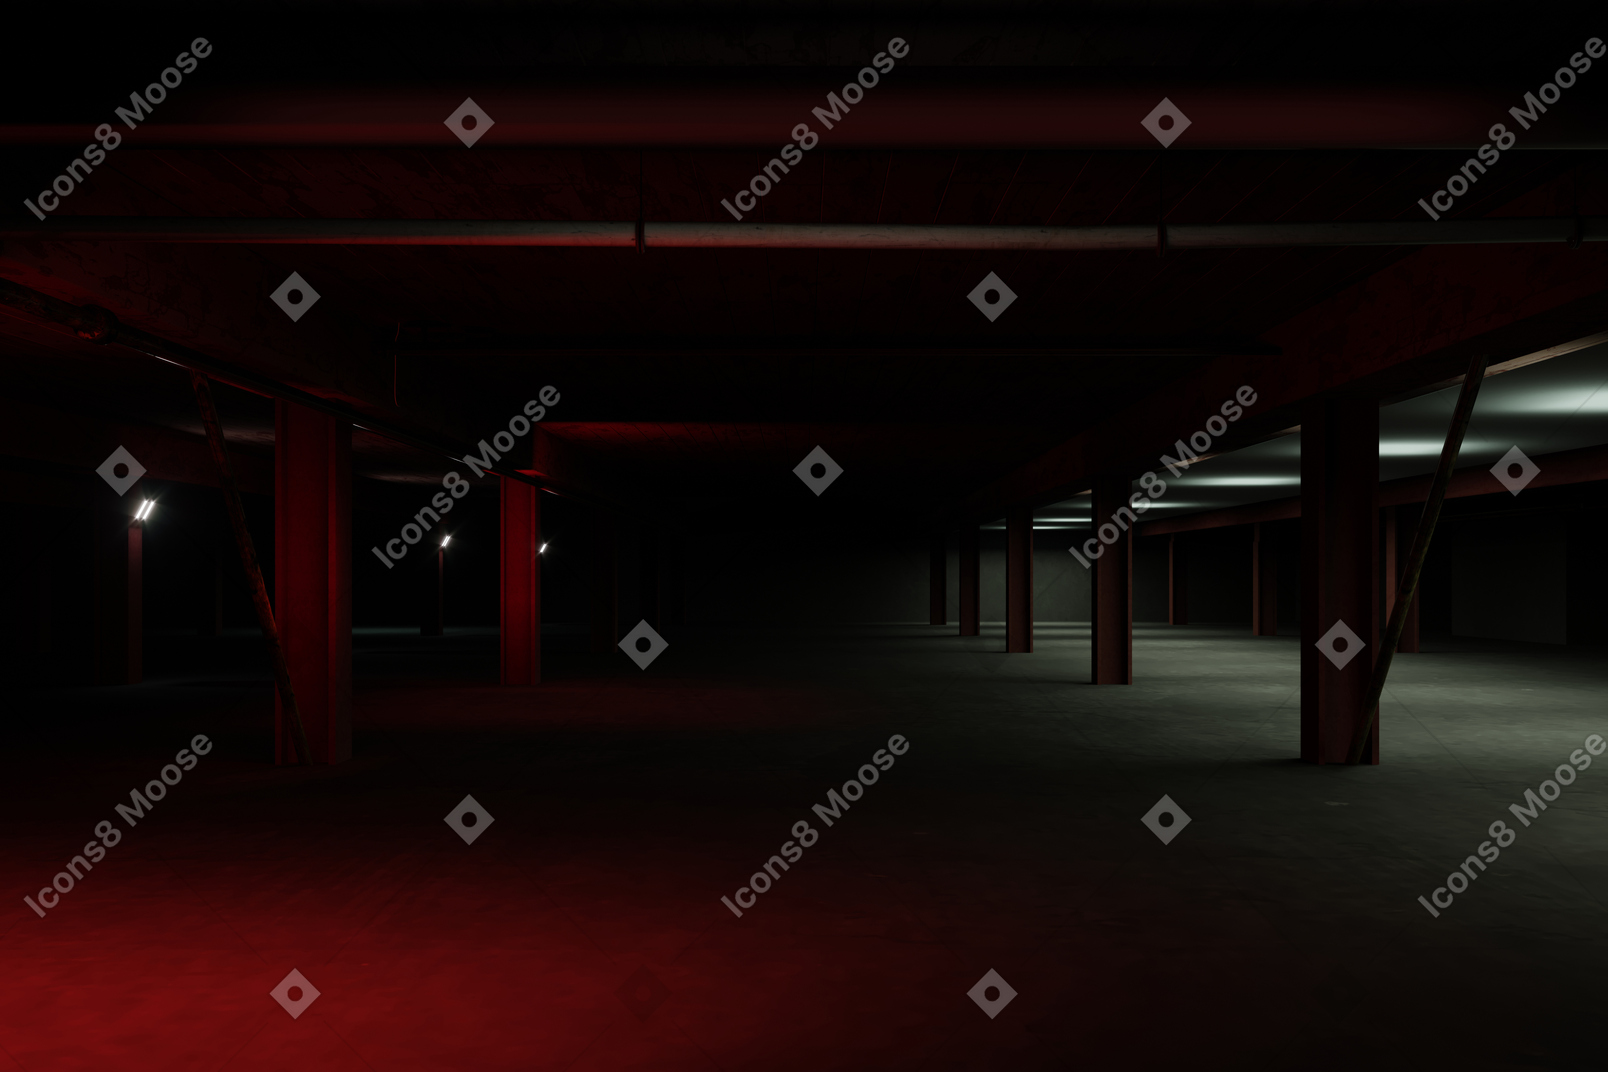 Dark underground car park with red light